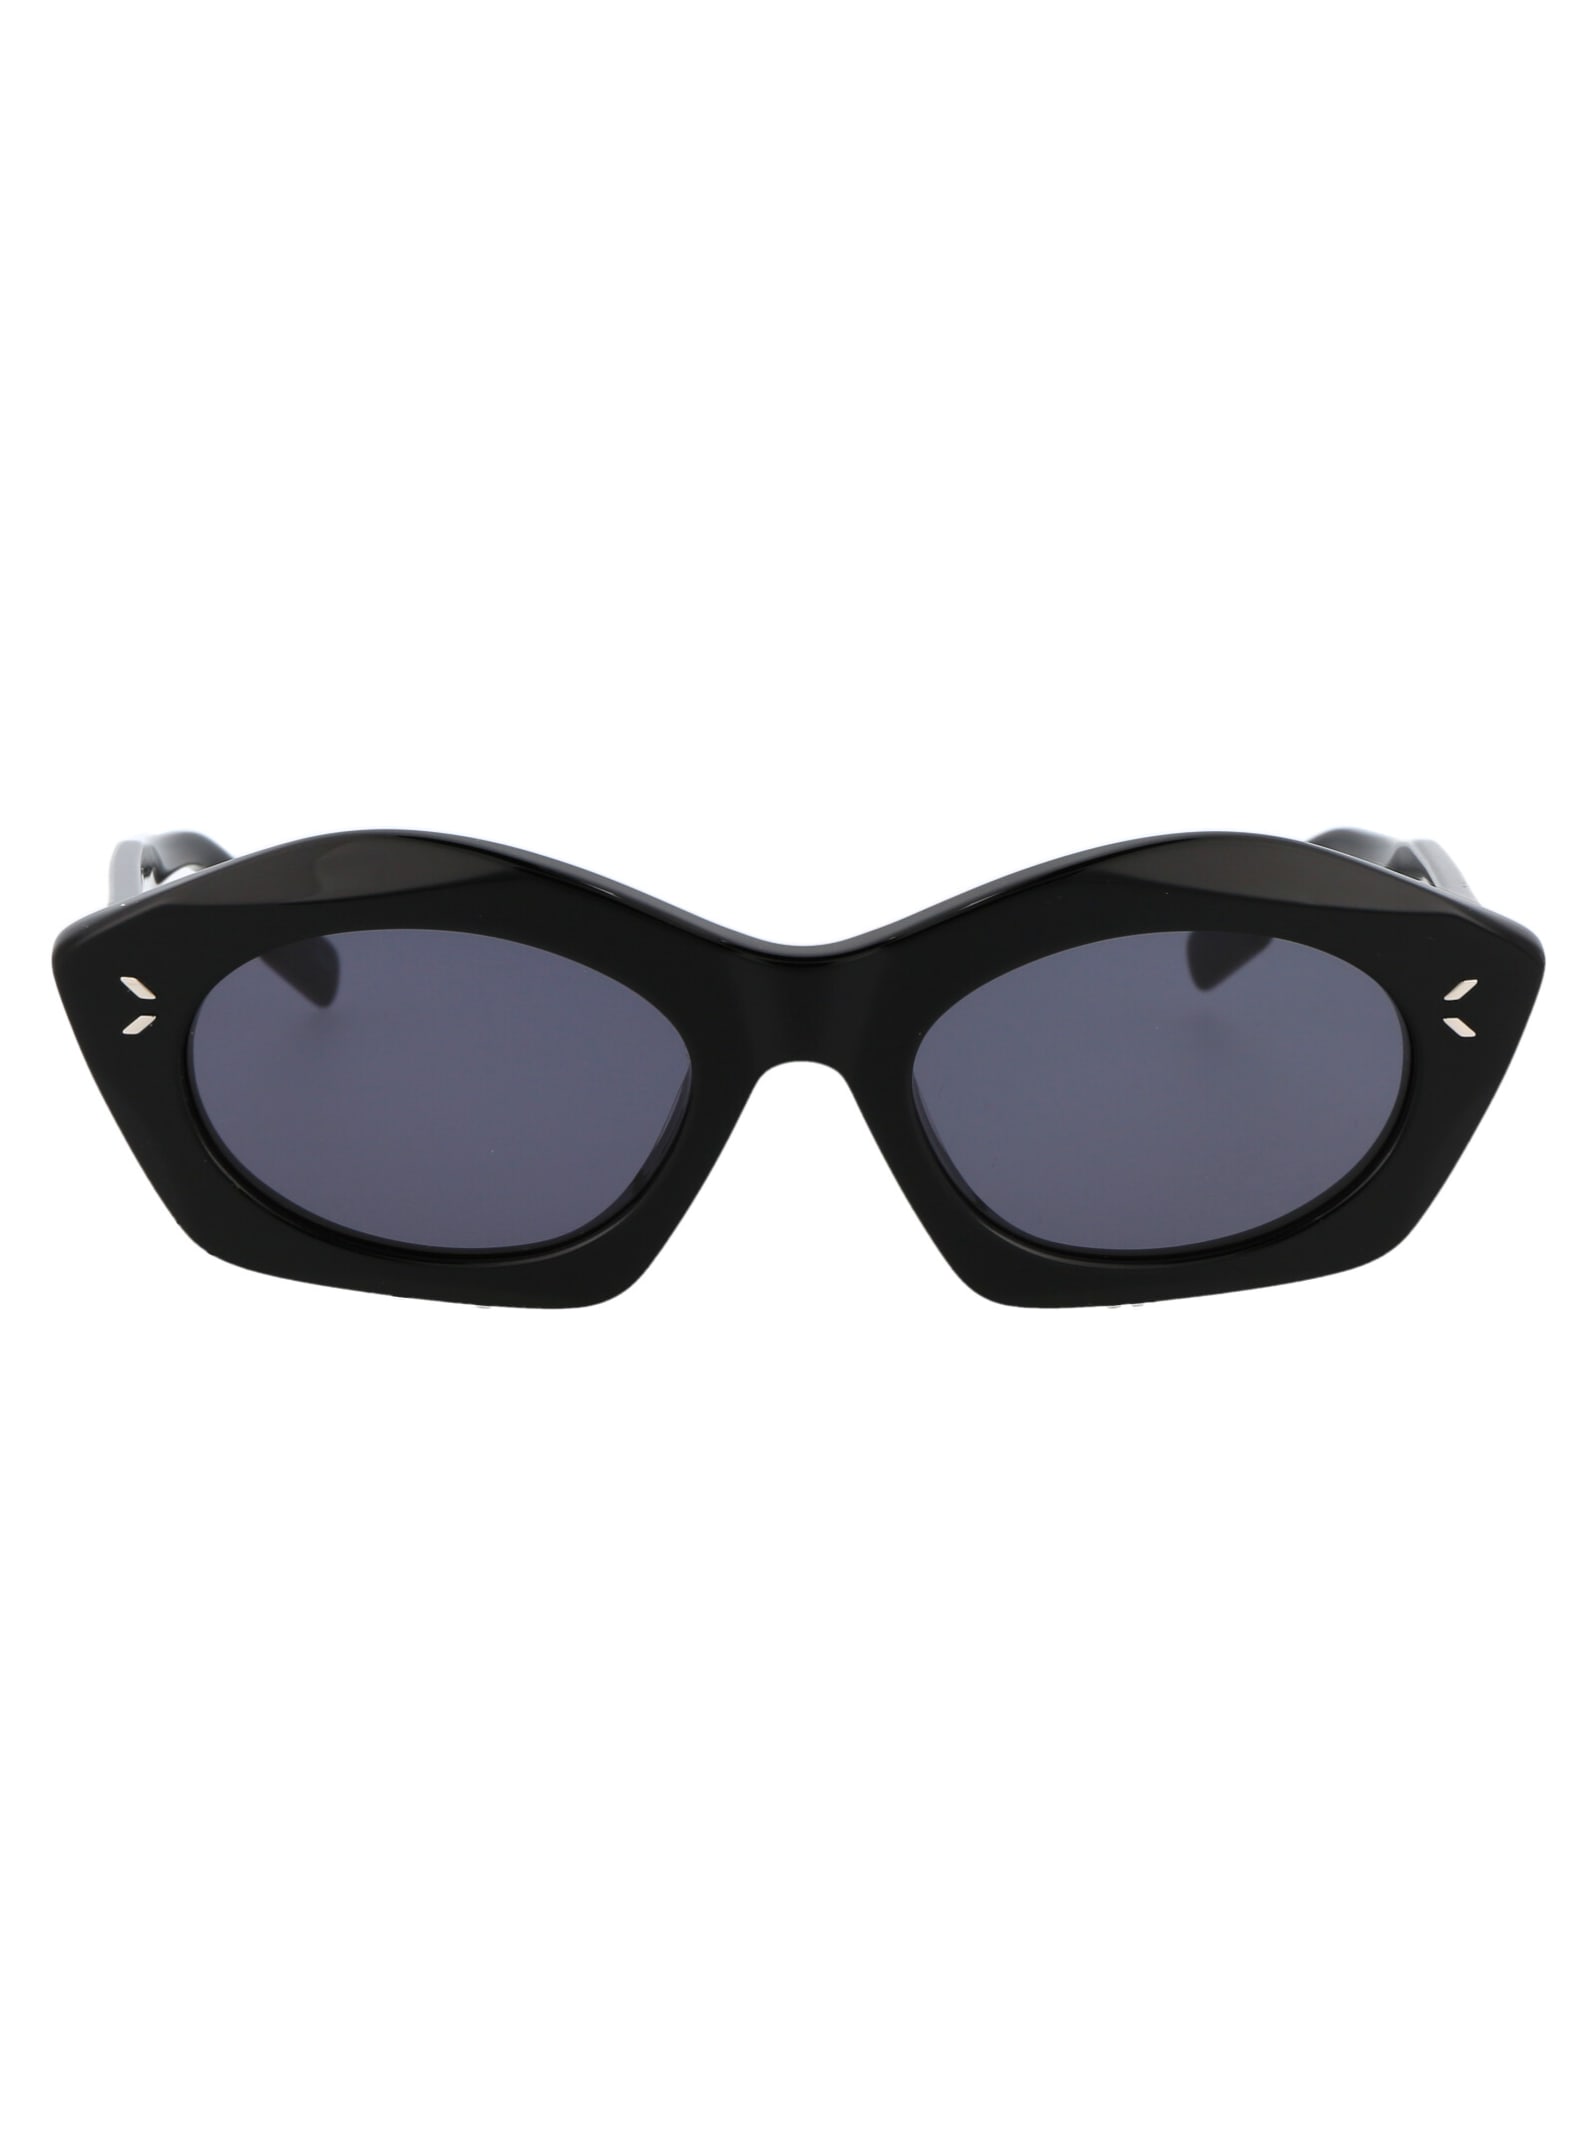 McQ Alexander McQueen Mq0341s Sunglasses